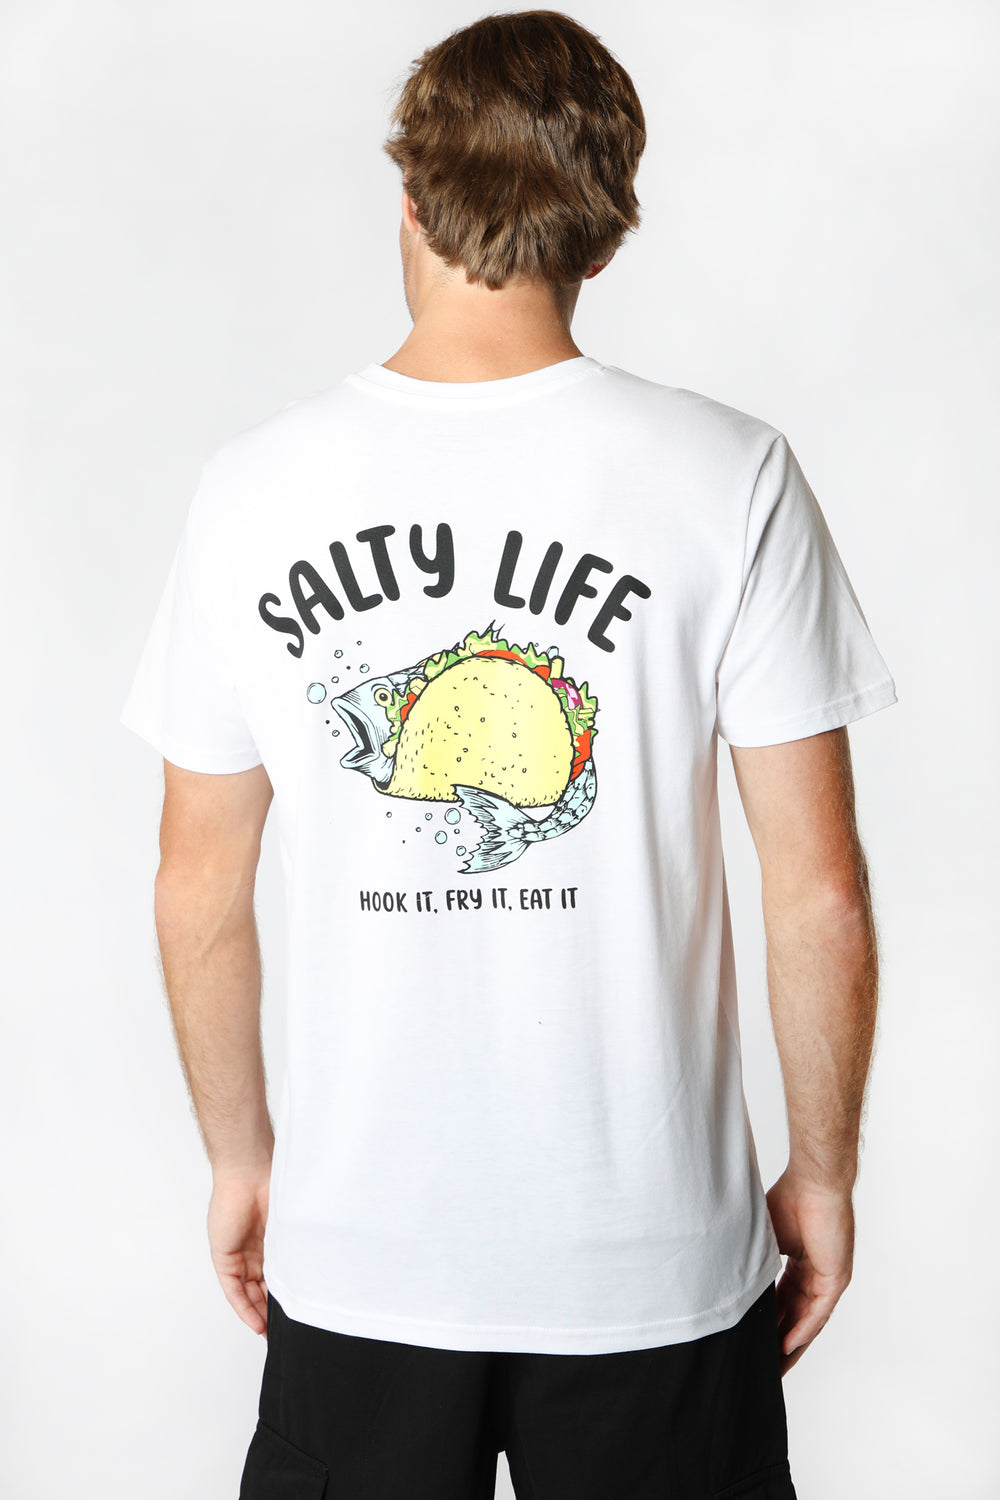 T-Shirt Imprimé Salty Life West49 Homme T-Shirt Imprimé Salty Life West49 Homme